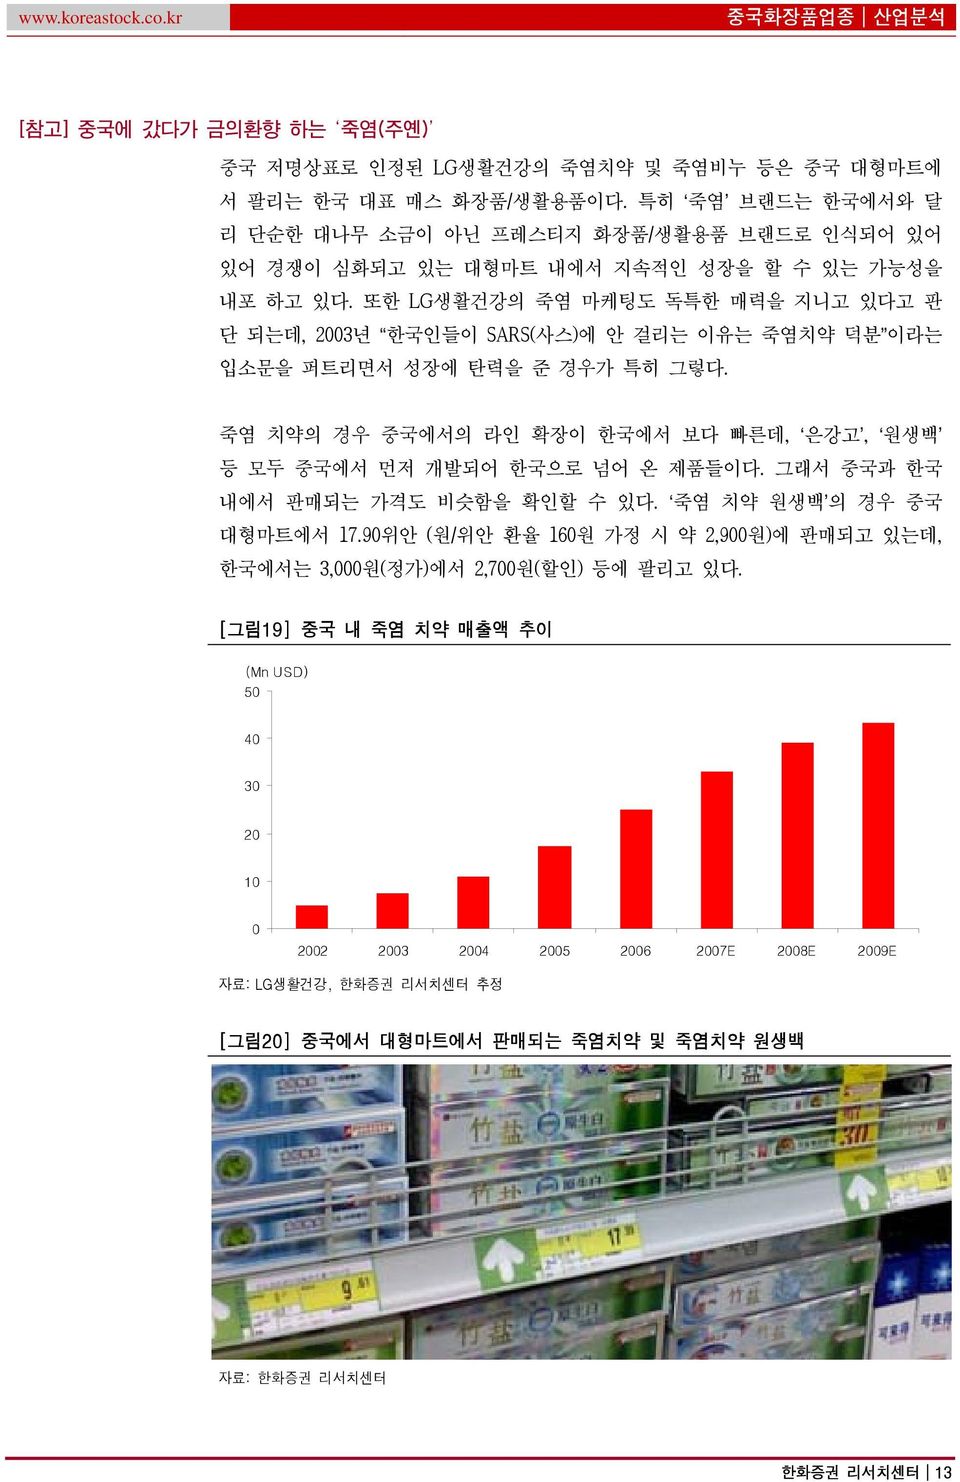 또한 LG생활건강의 죽염 마케팅도 독특한 매력을 지니고 있다고 판 단 되는데, 23년 한국인들이 SARS(사스)에 안 걸리는 이유는 죽염치약 덕분 이라는 입소문을 퍼트리면서 성장에 탄력을 준 경우가 특히 그렇다.